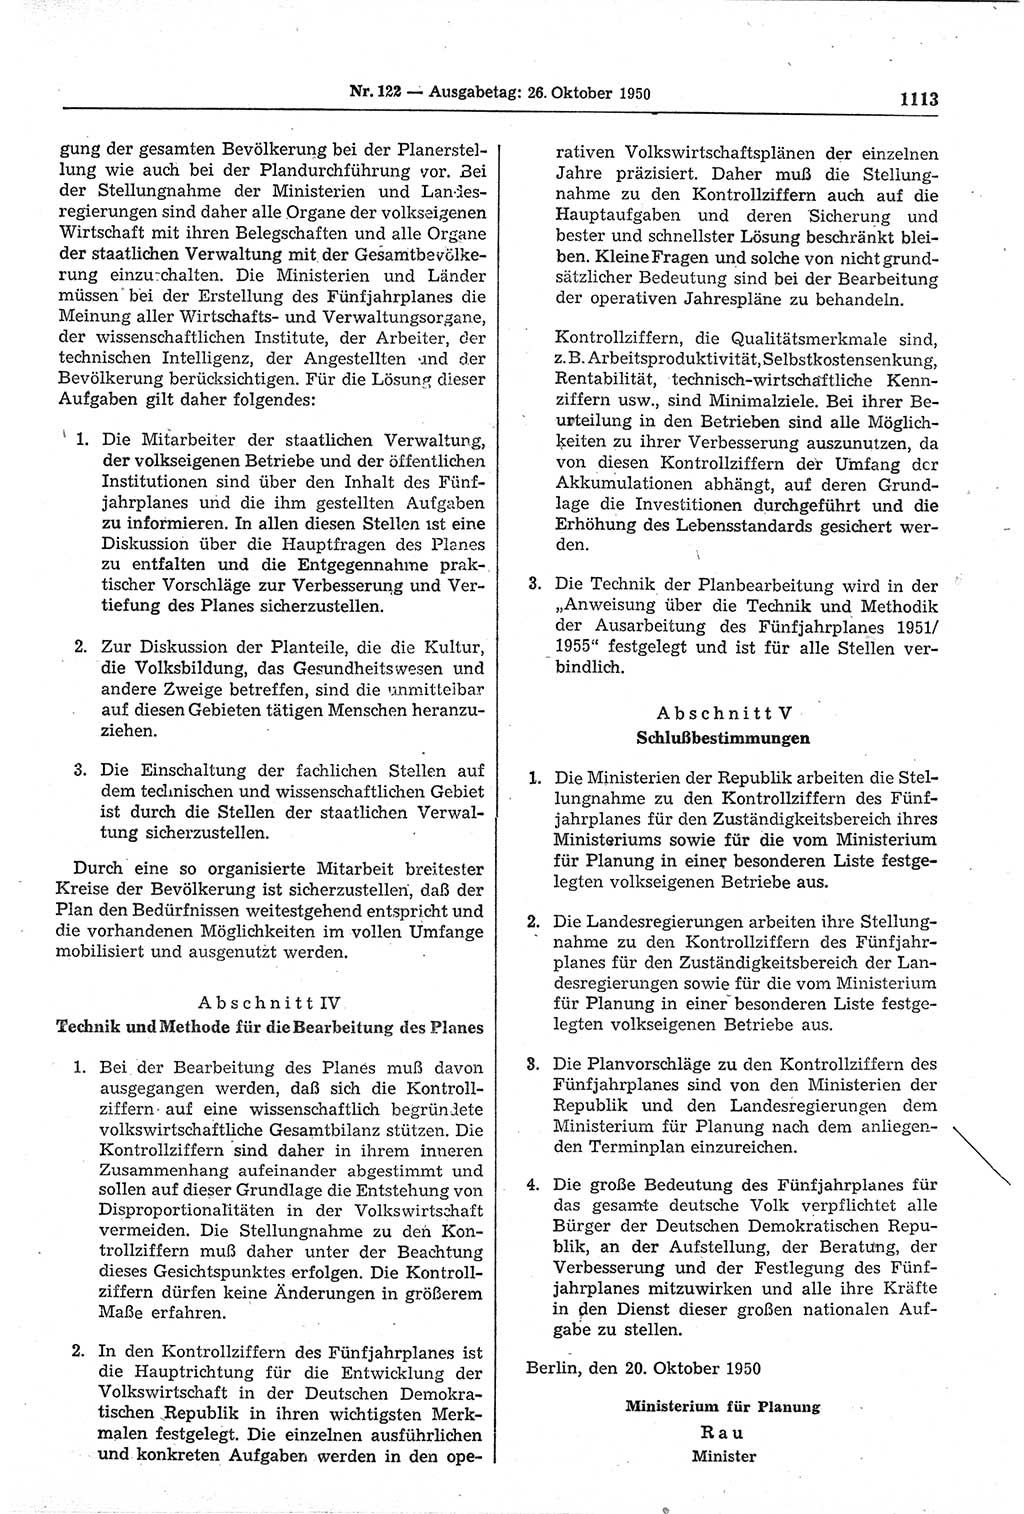 Gesetzblatt (GBl.) der Deutschen Demokratischen Republik (DDR) 1950, Seite 1113 (GBl. DDR 1950, S. 1113)